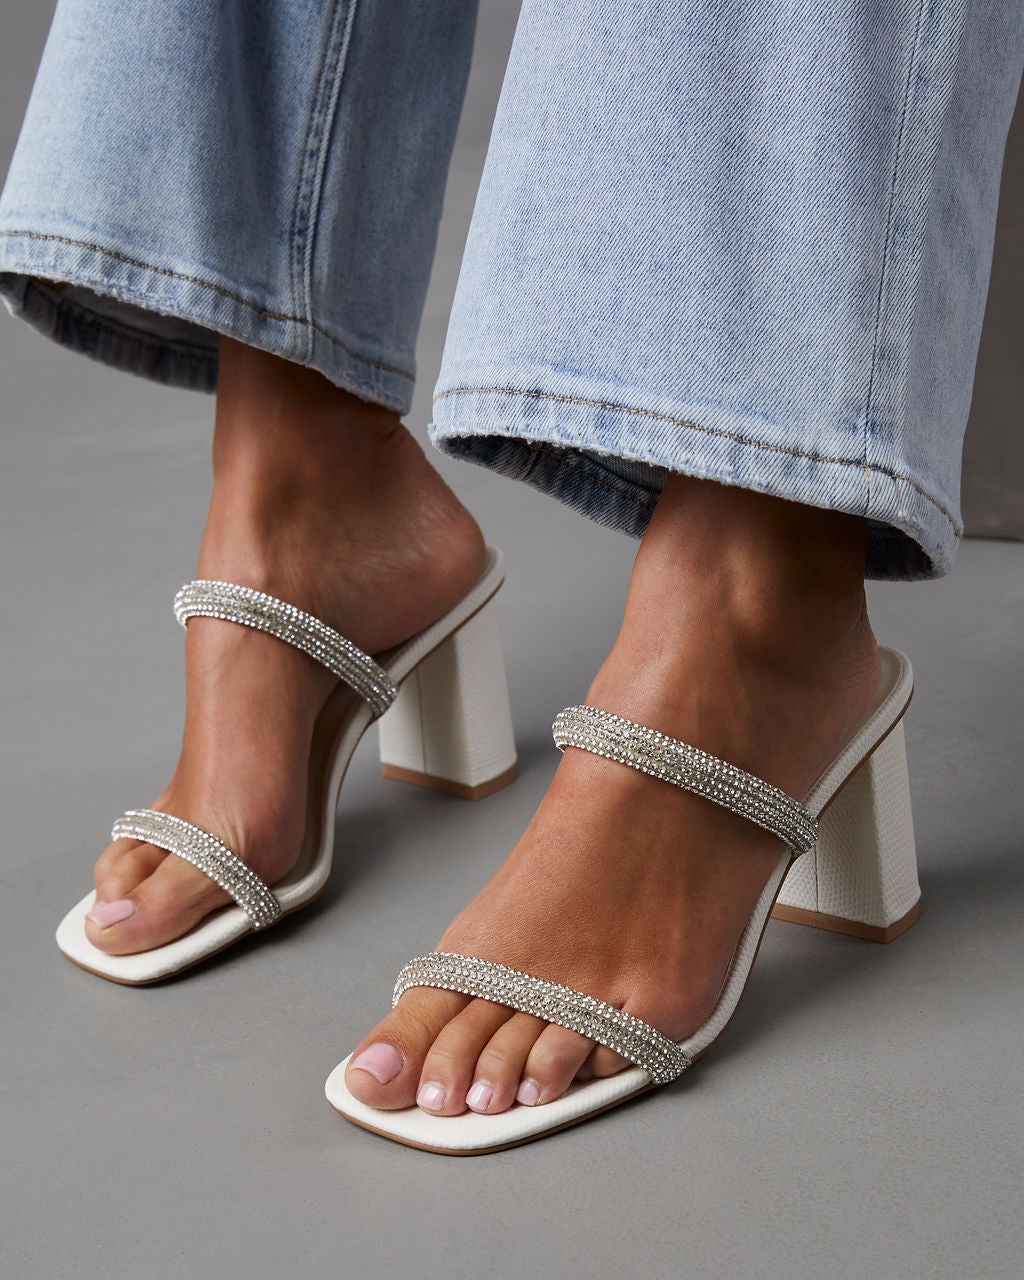 Women's Embellished Strappy Sandals & Heels | Nordstrom